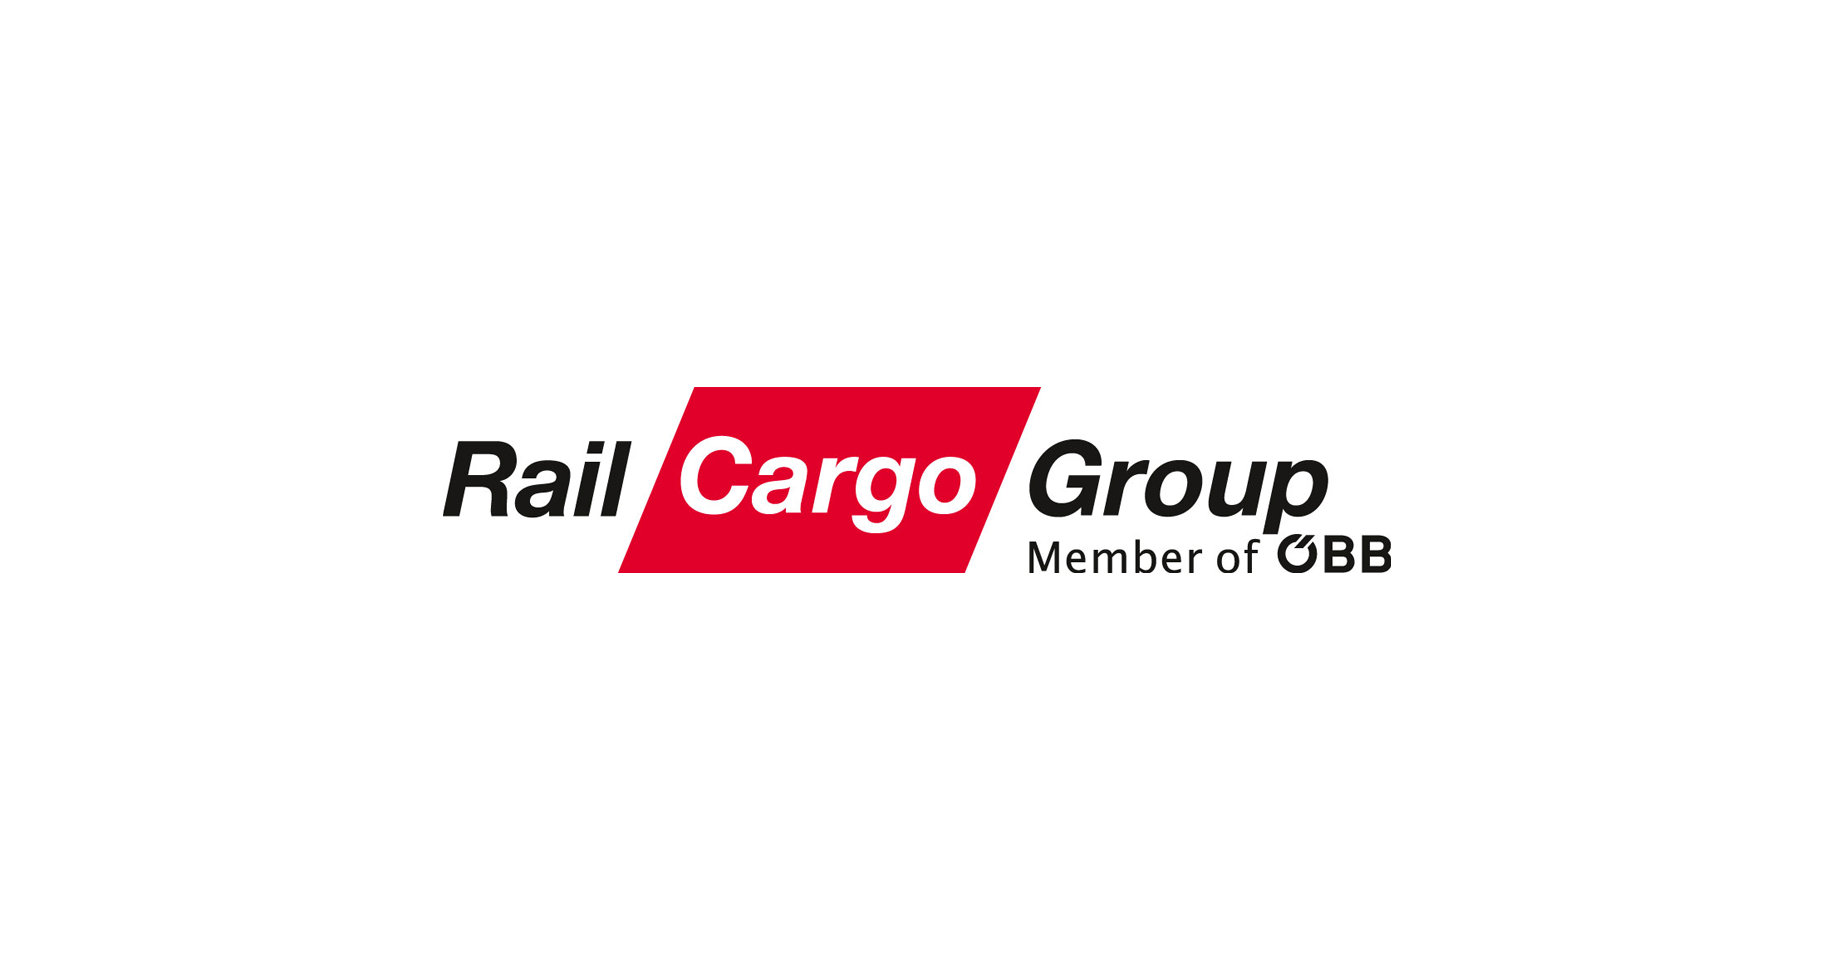 (c) Railcargo.com